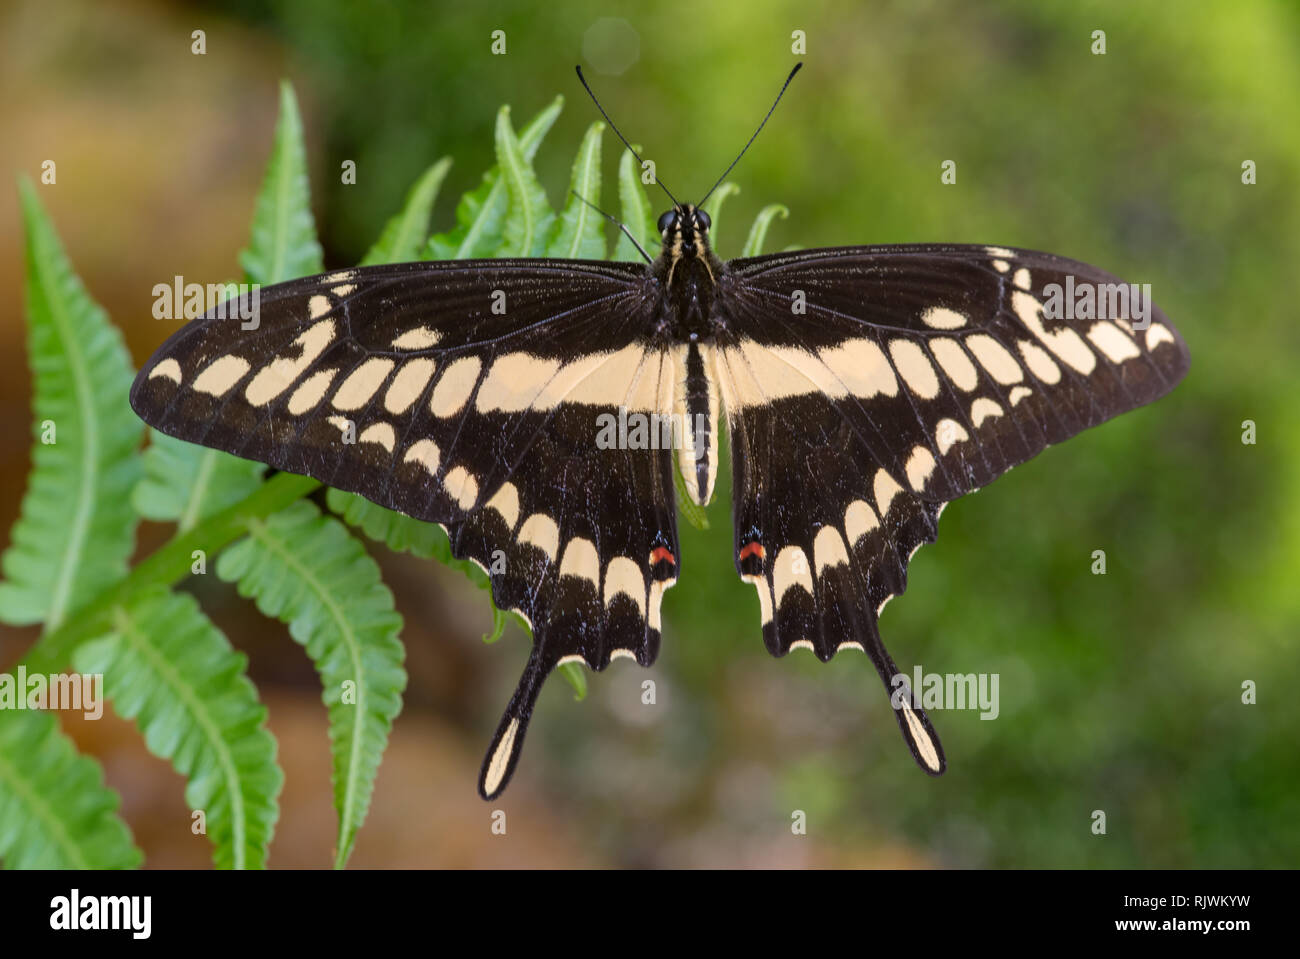 A Thoas Swallowtail (Papilio thoas) butterfly near Mindo in Ecuador Stock Photo